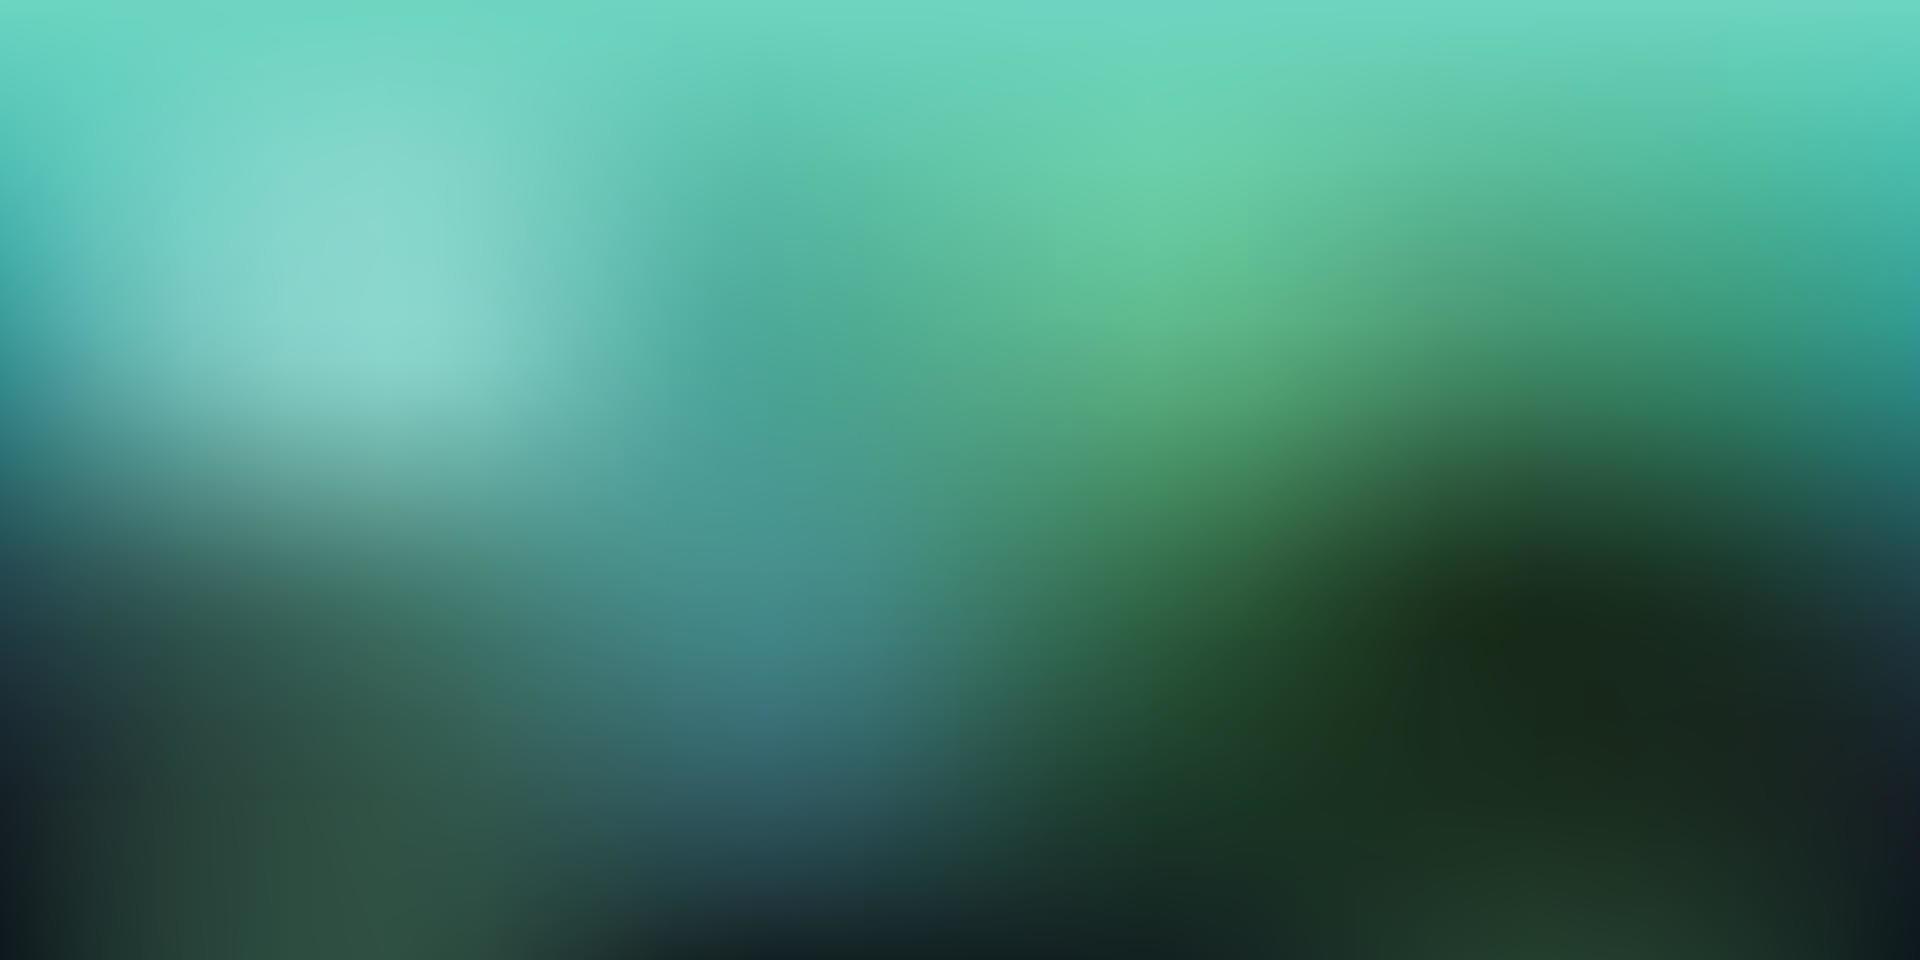 Light Blue, Green vector abstract blur texture.